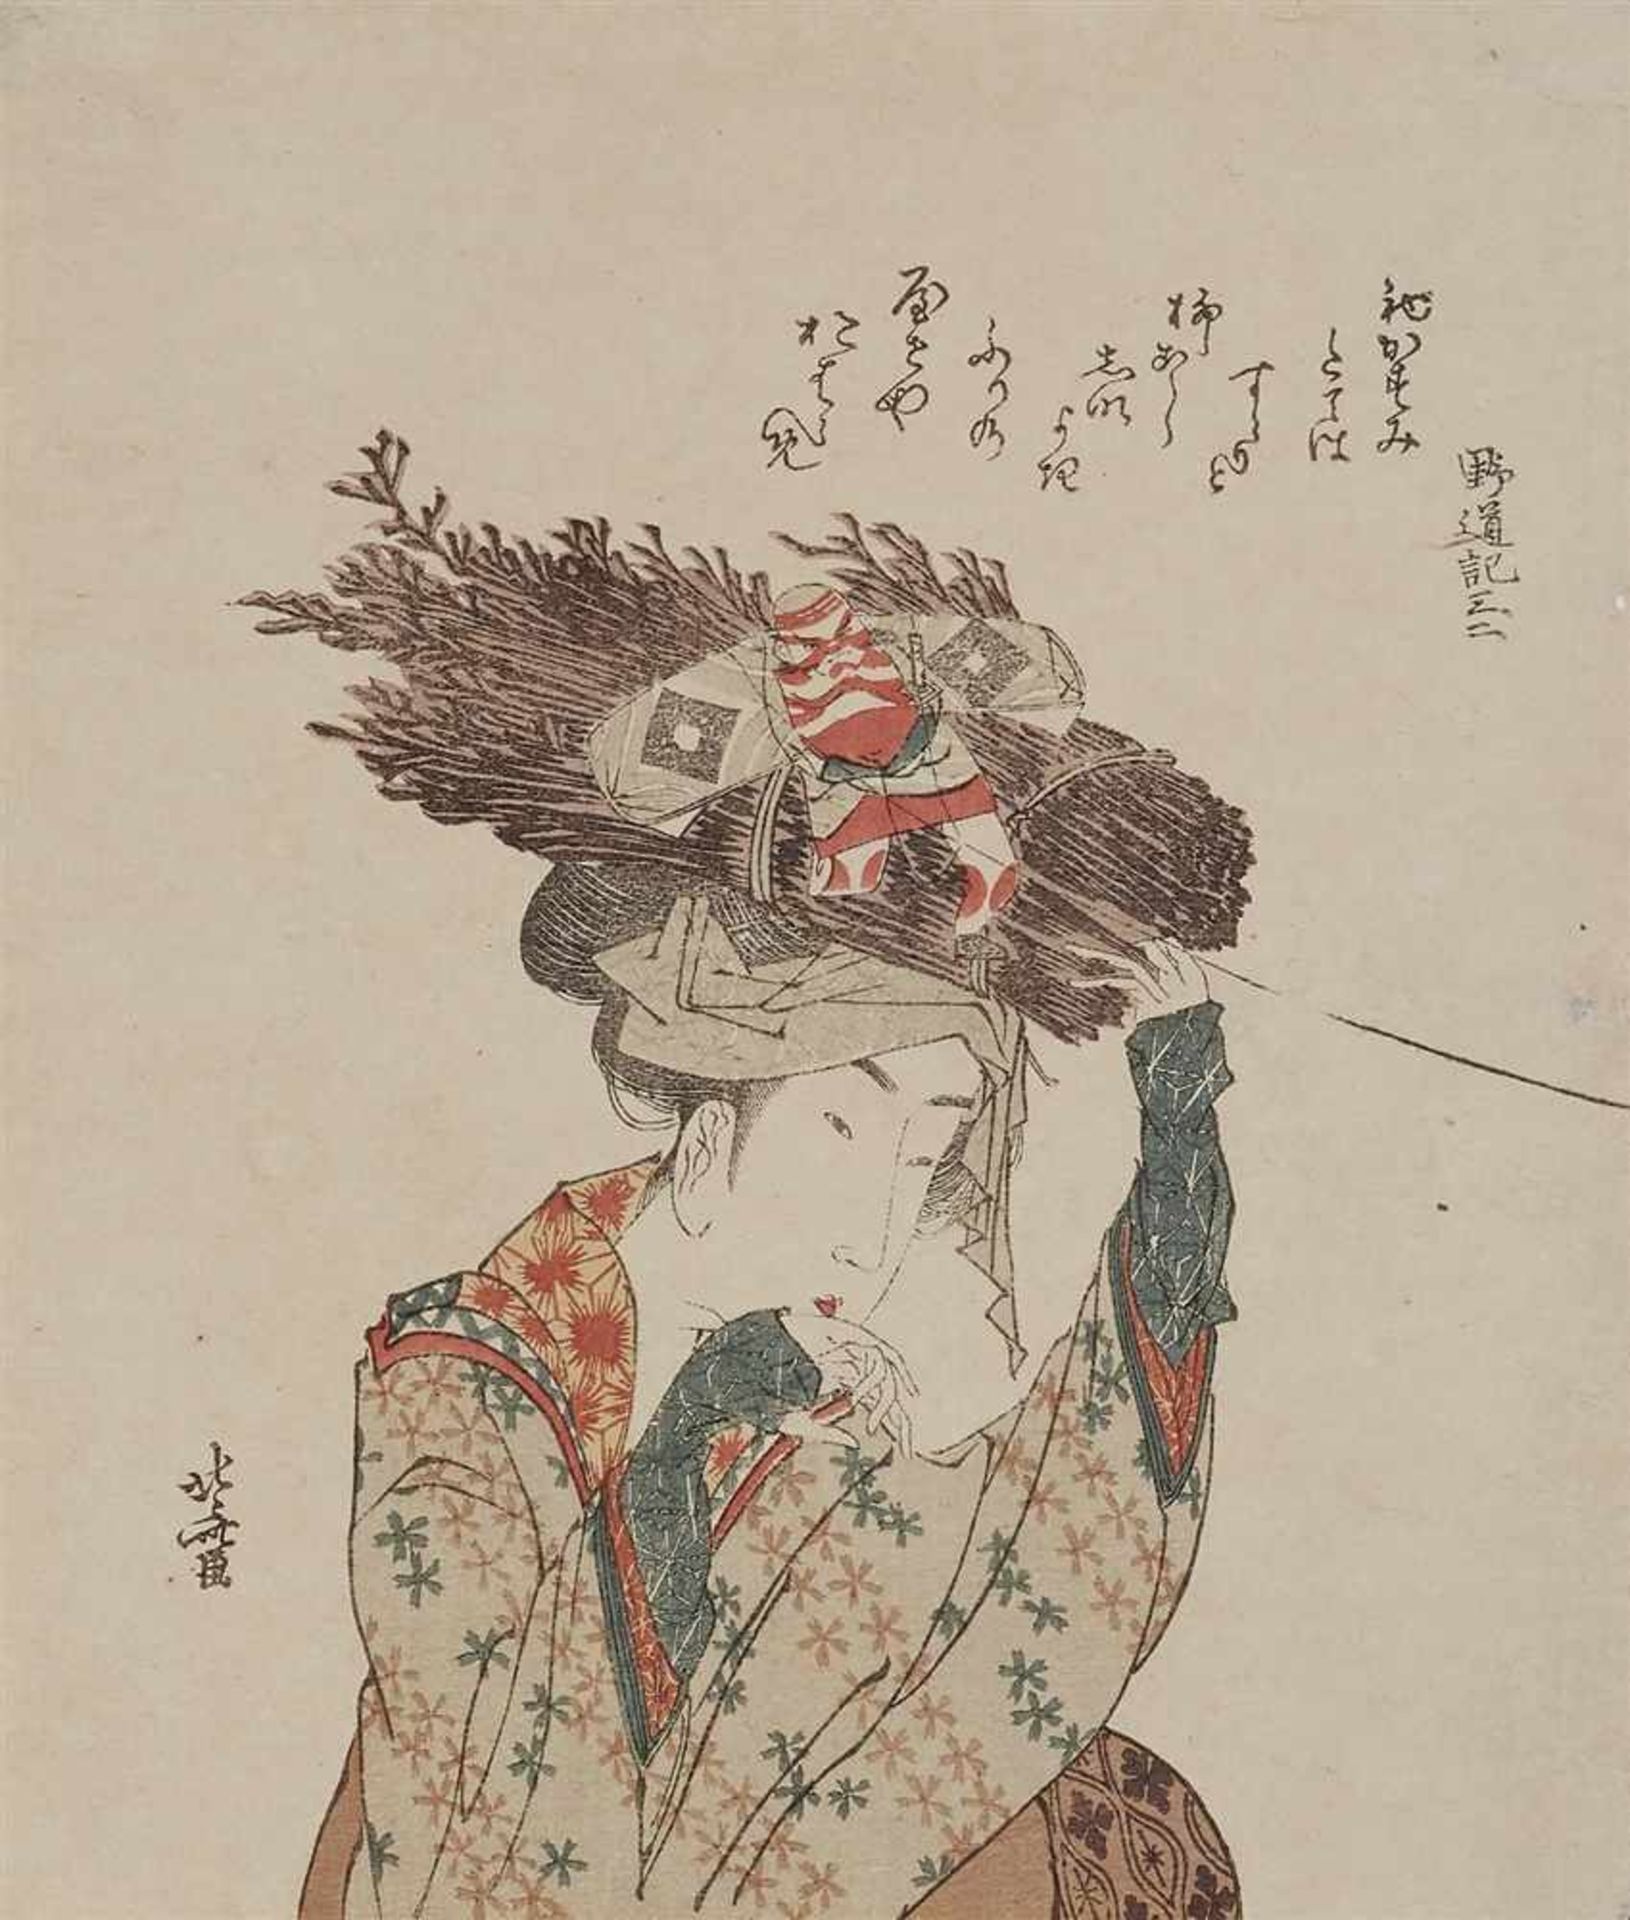 Totoya Hokkei (1780-1850) and Katsushika Hokusai (1760-1849)